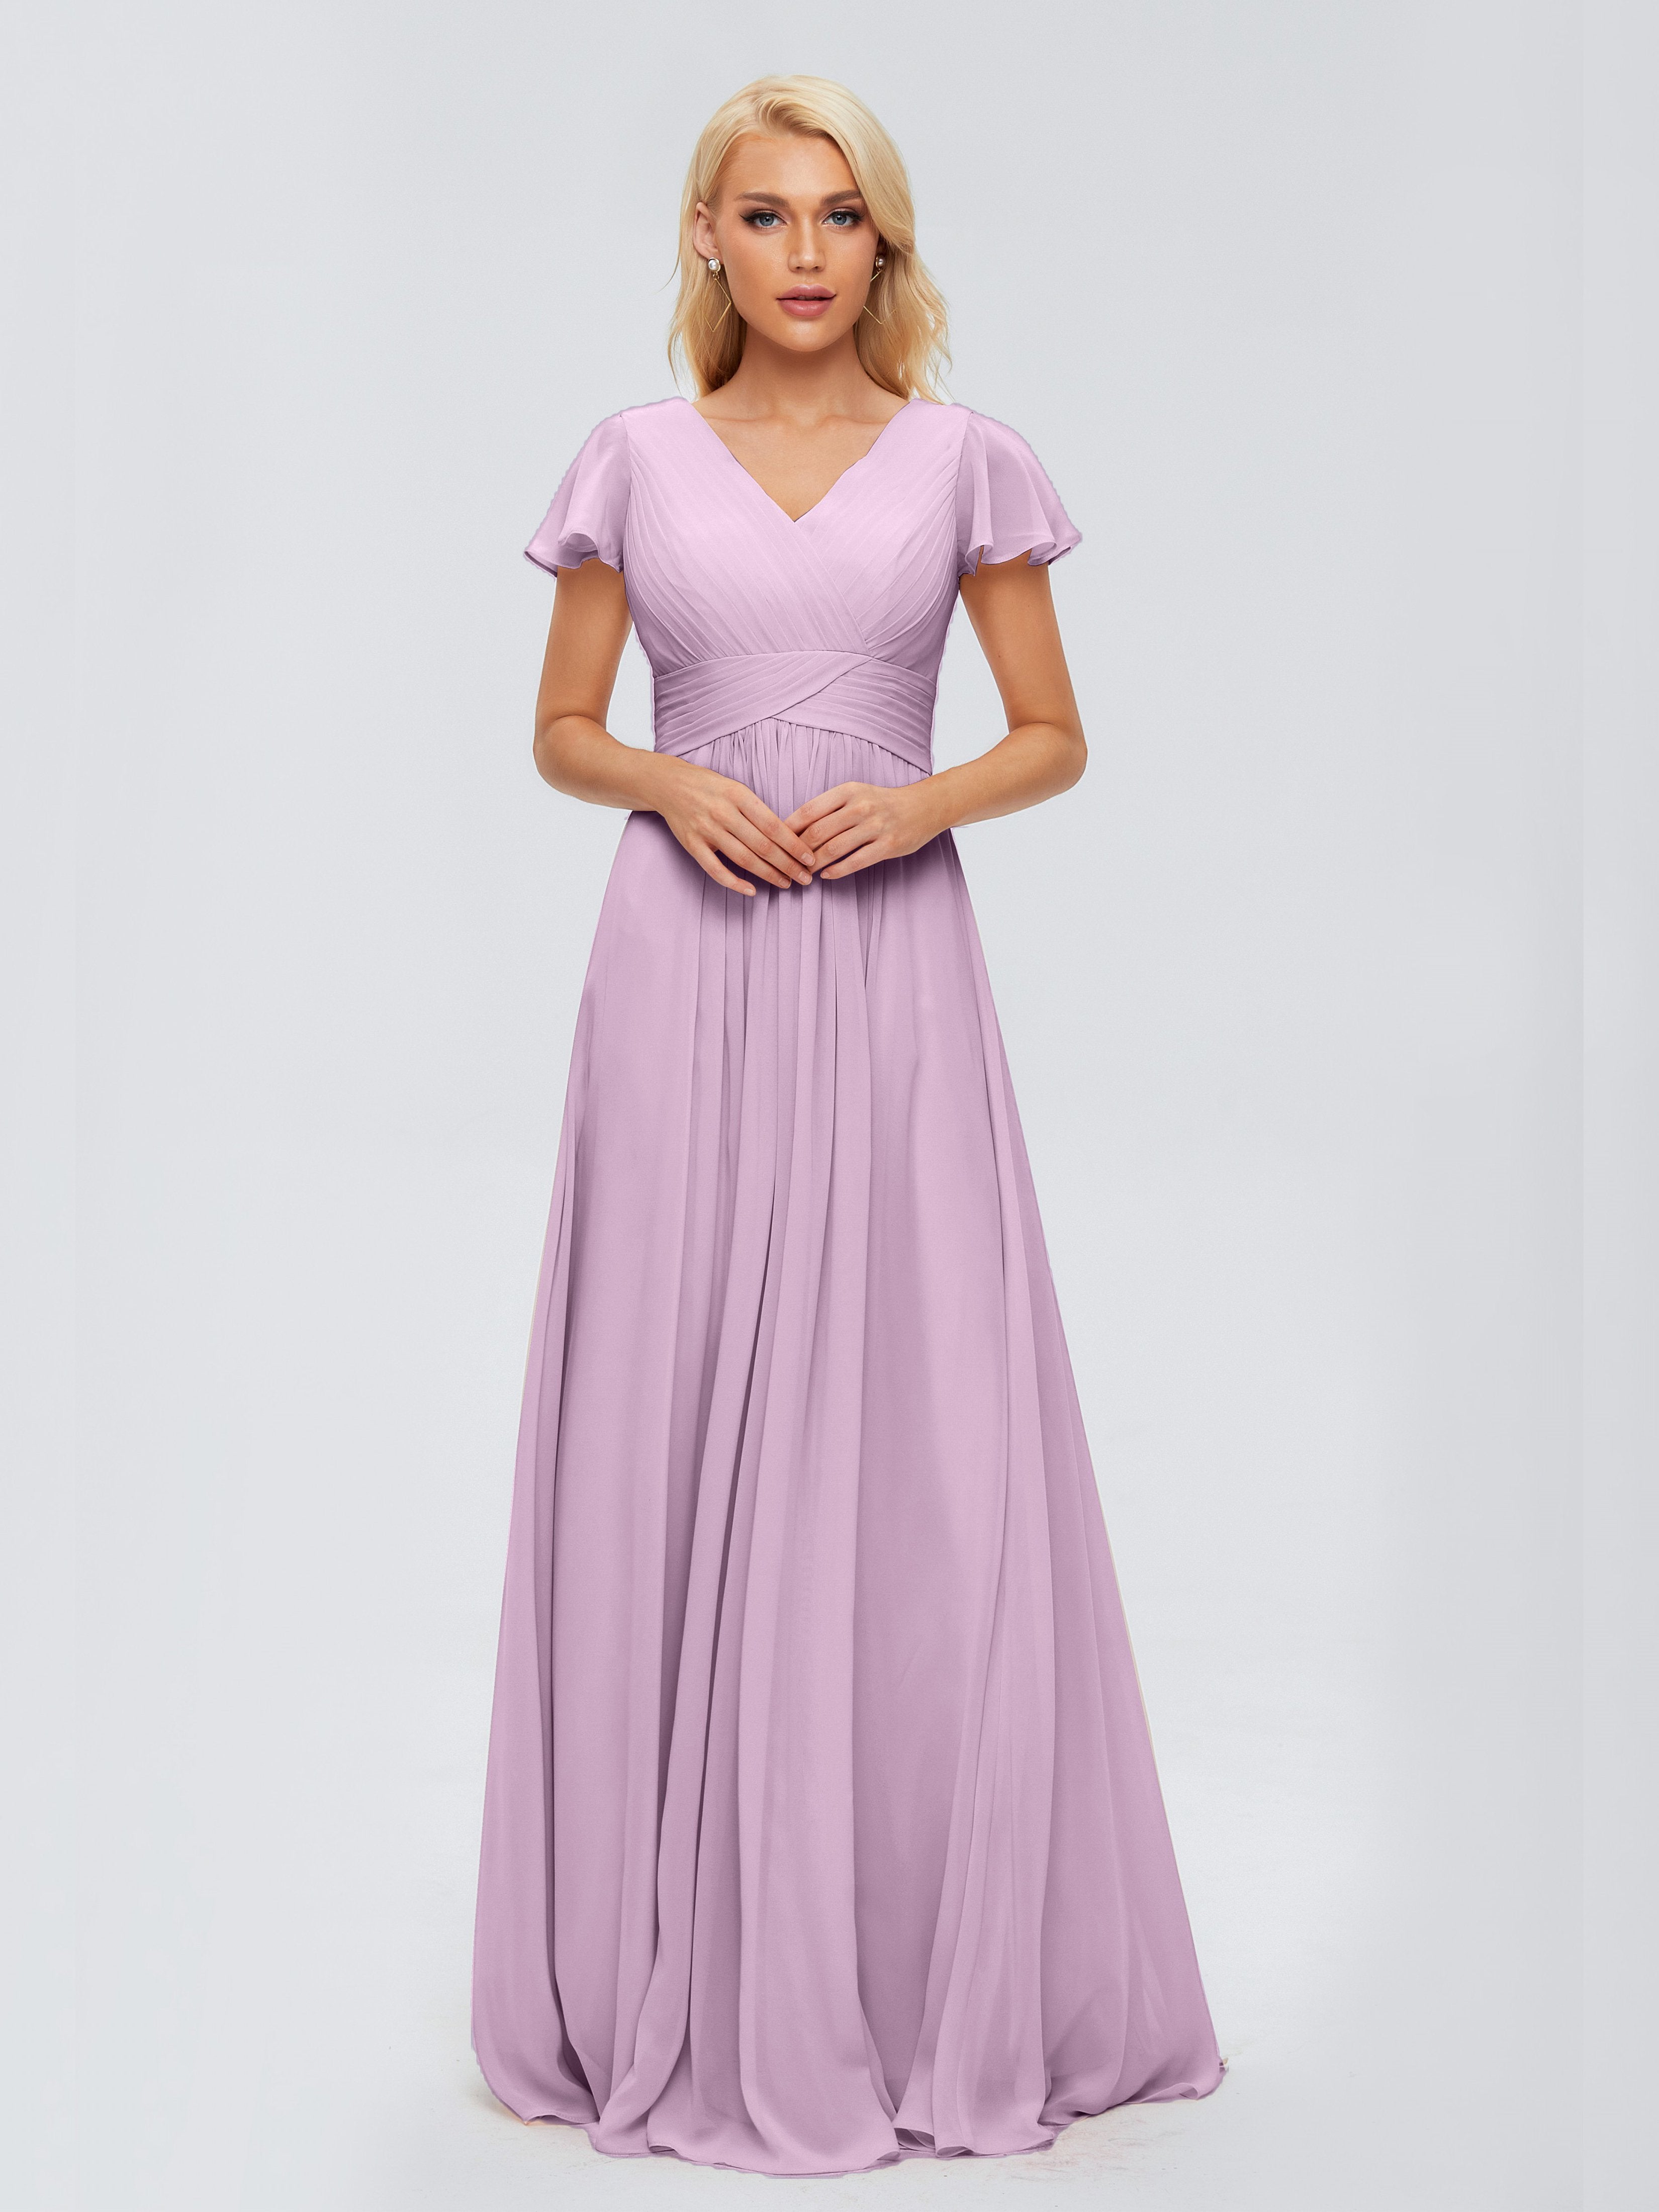 From $89-Adorable Wisteria Bridesmaid Dresses | Cicinia